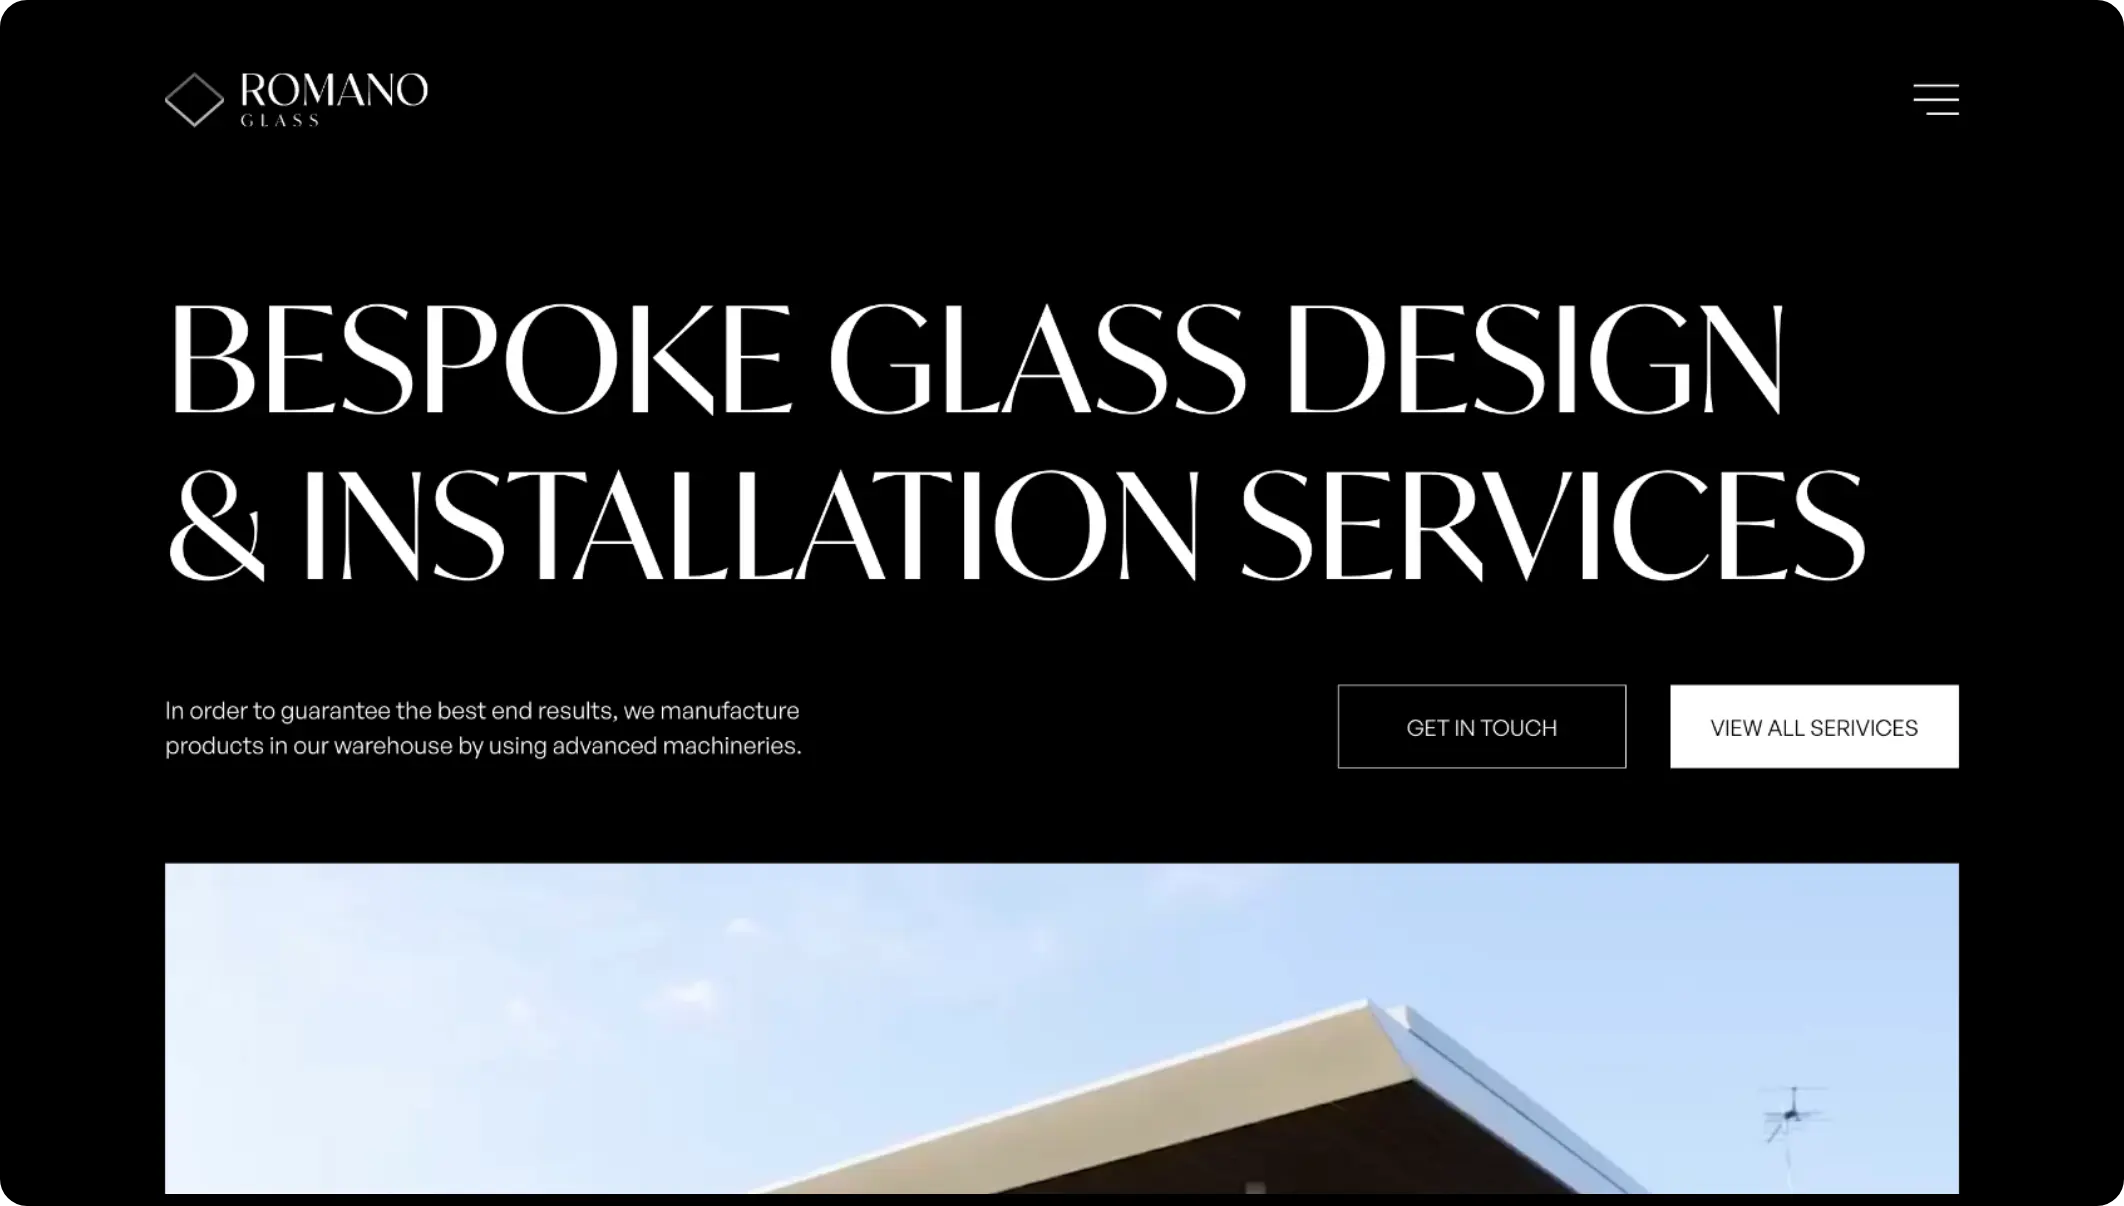 Página principal del sitio web Romano Glass, destacando servicios de diseño e instalación de vidrio a medida.